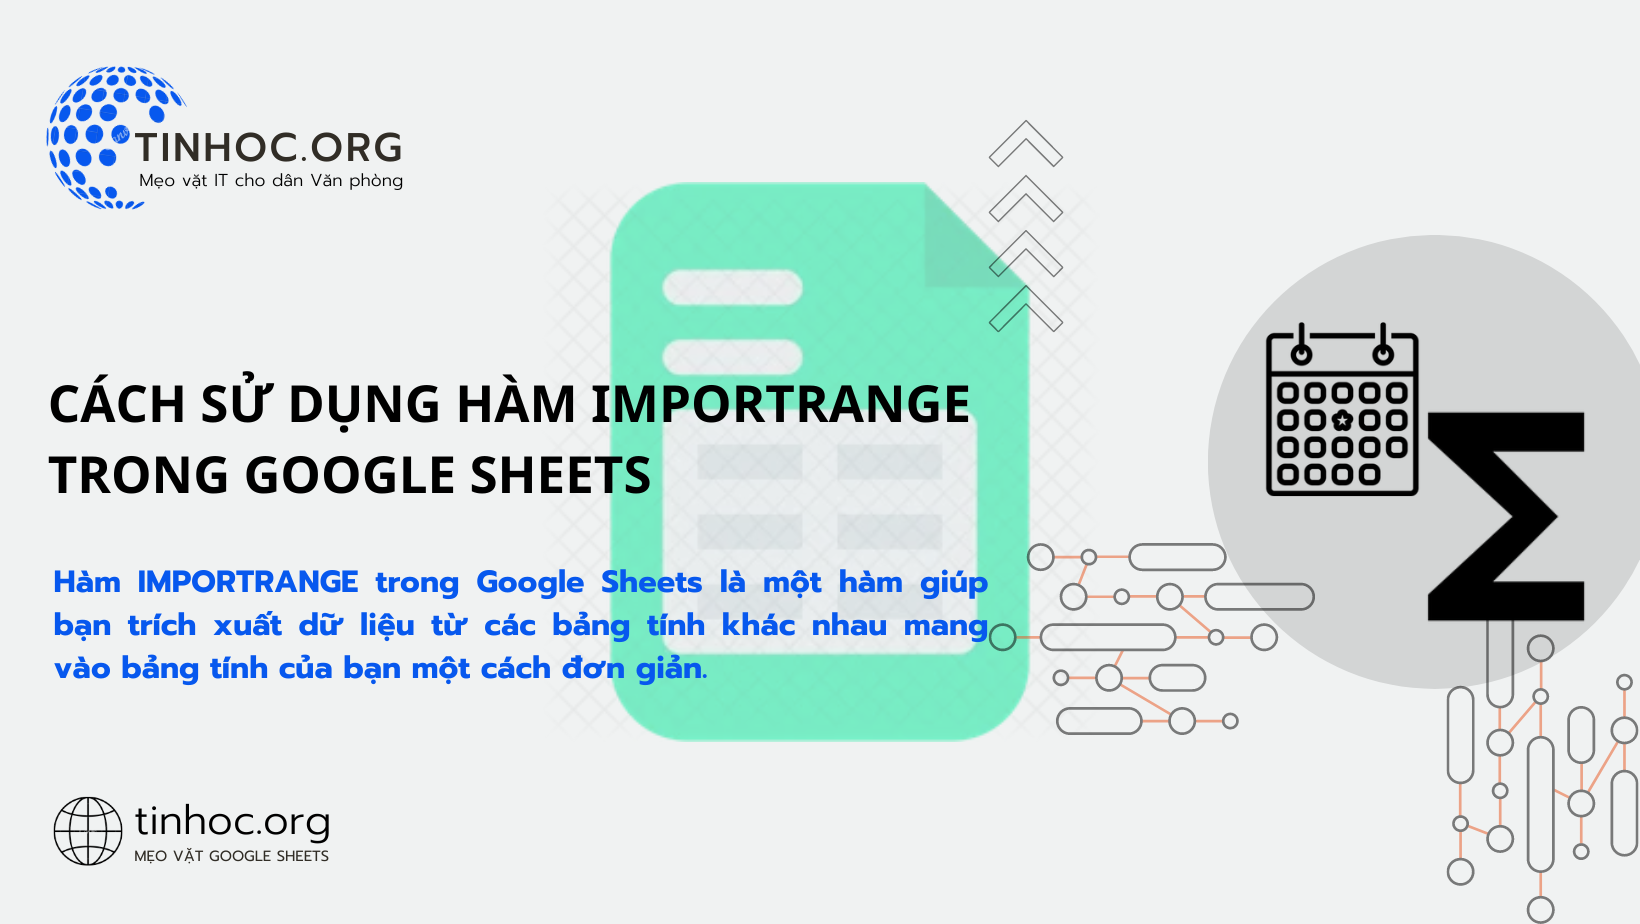 Cách sử dụng hàm IMPORTRANGE trong Google Sheets